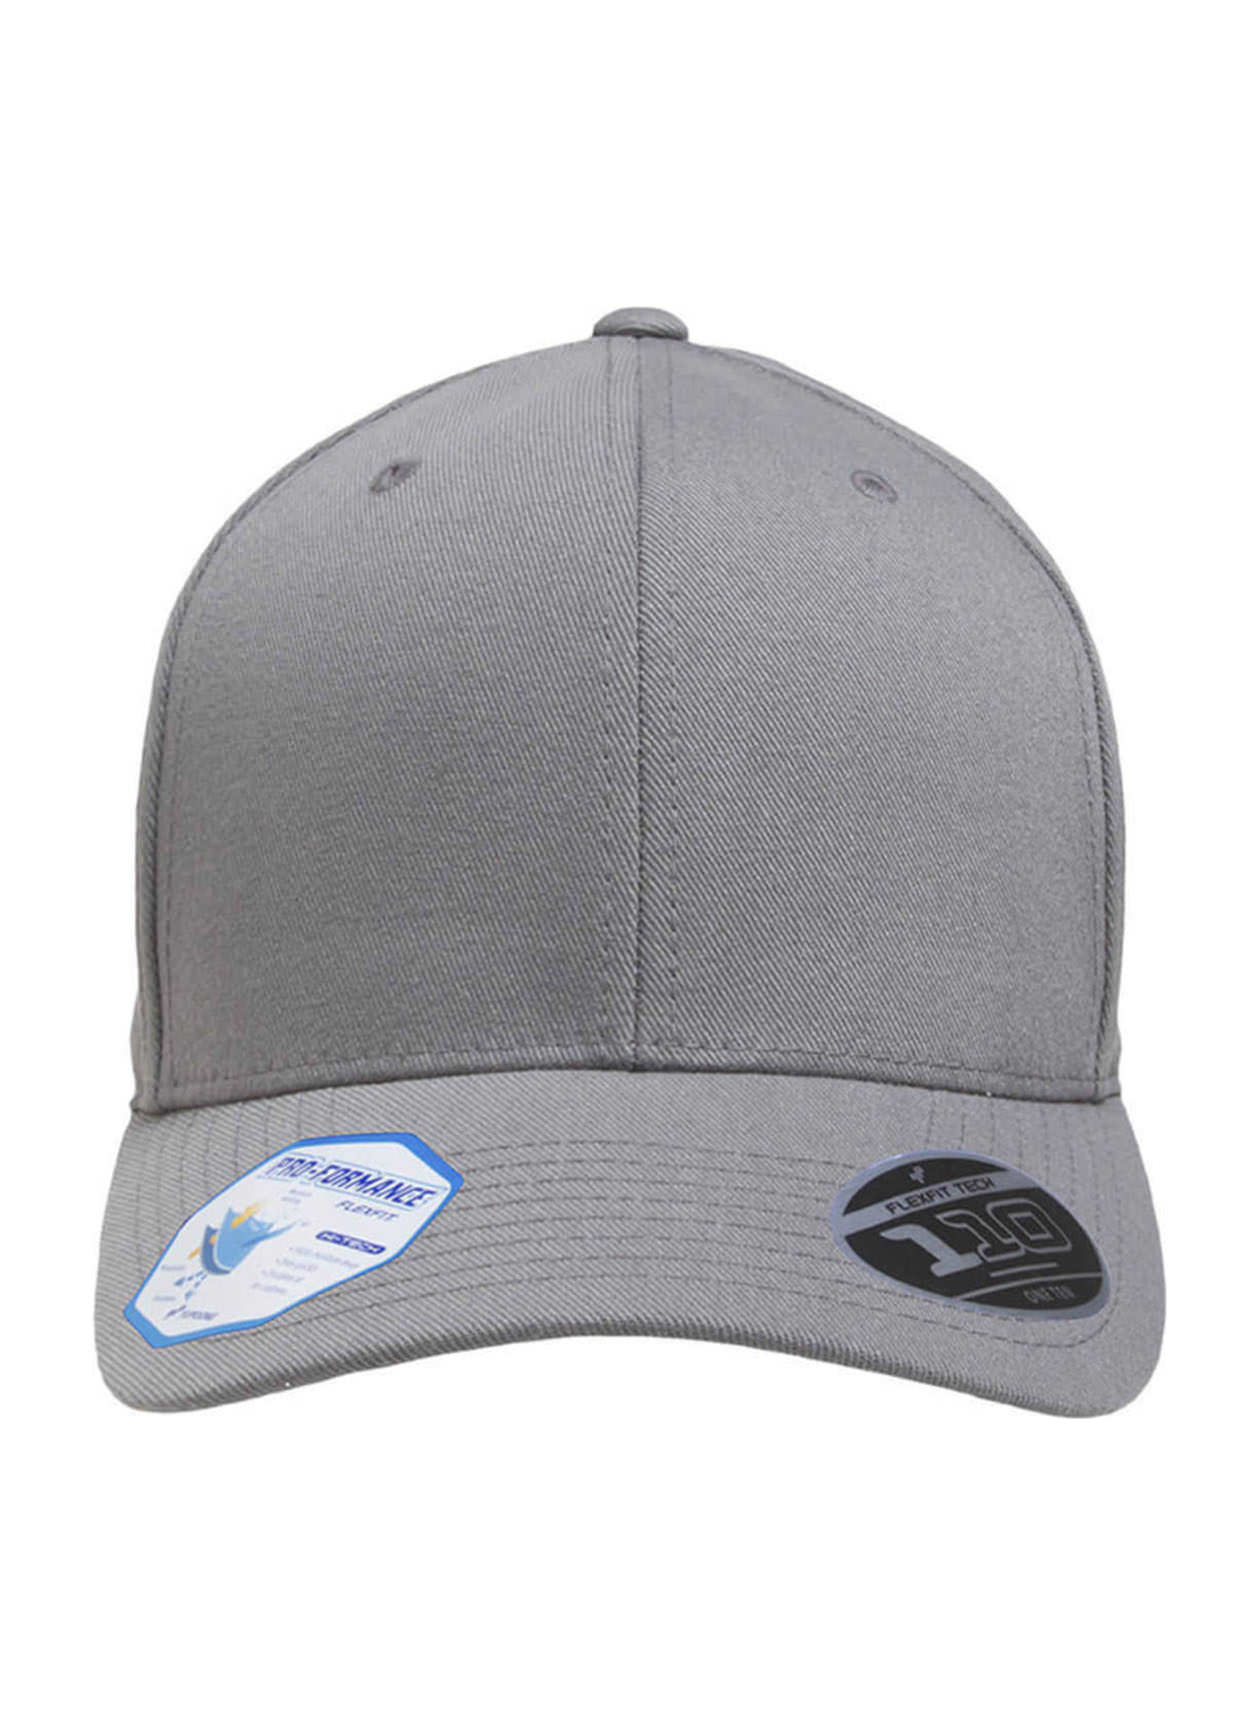 Flexfit Pro-Formance Solid Hat Grey Flexfit 